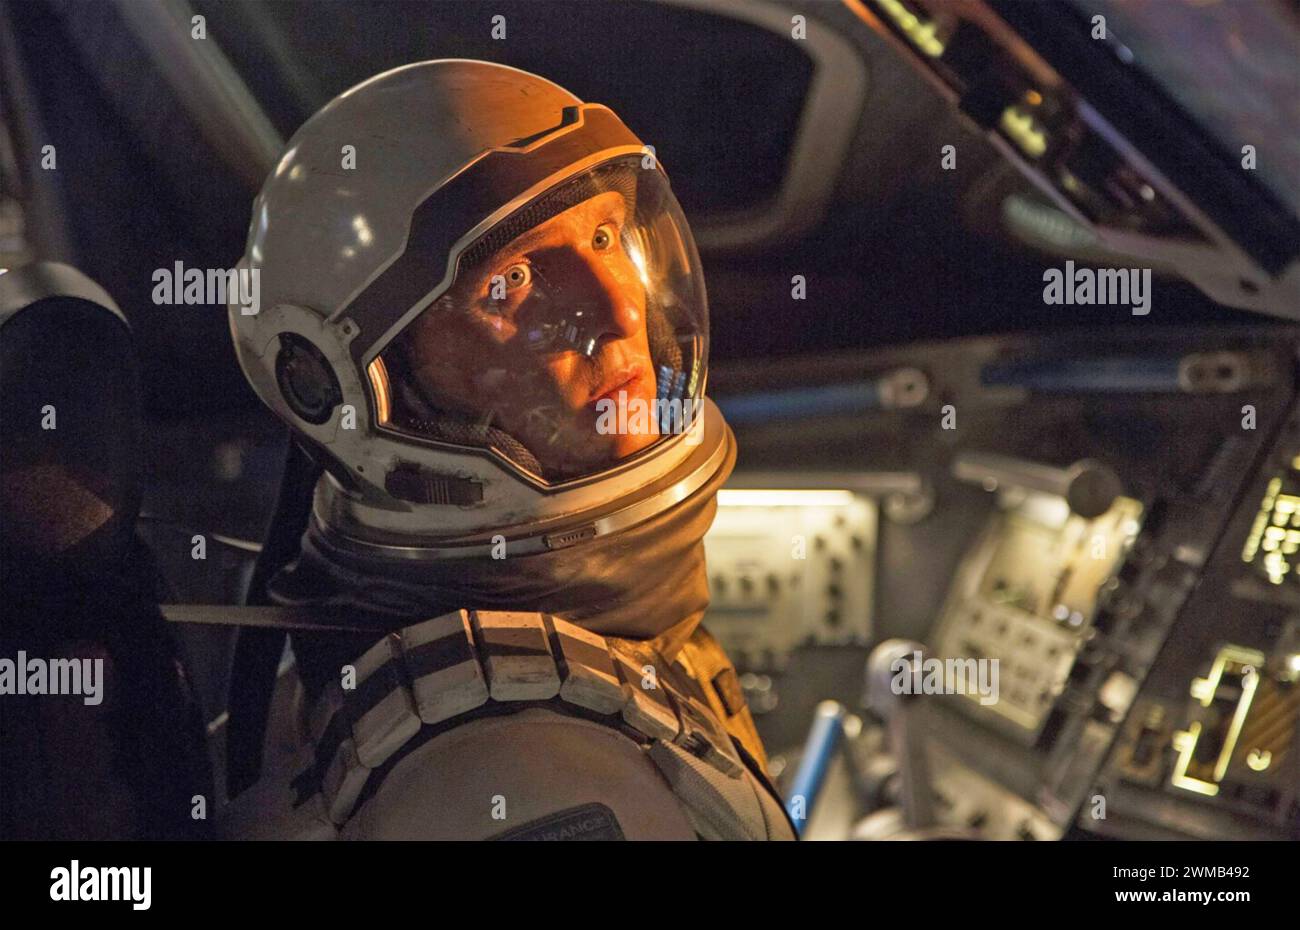 INTERSTELLAIRE 2014 Warner Bros Images film de science-fiction avec Matthew McConaughey comme pilote de la NASA Joseph Cooper Banque D'Images